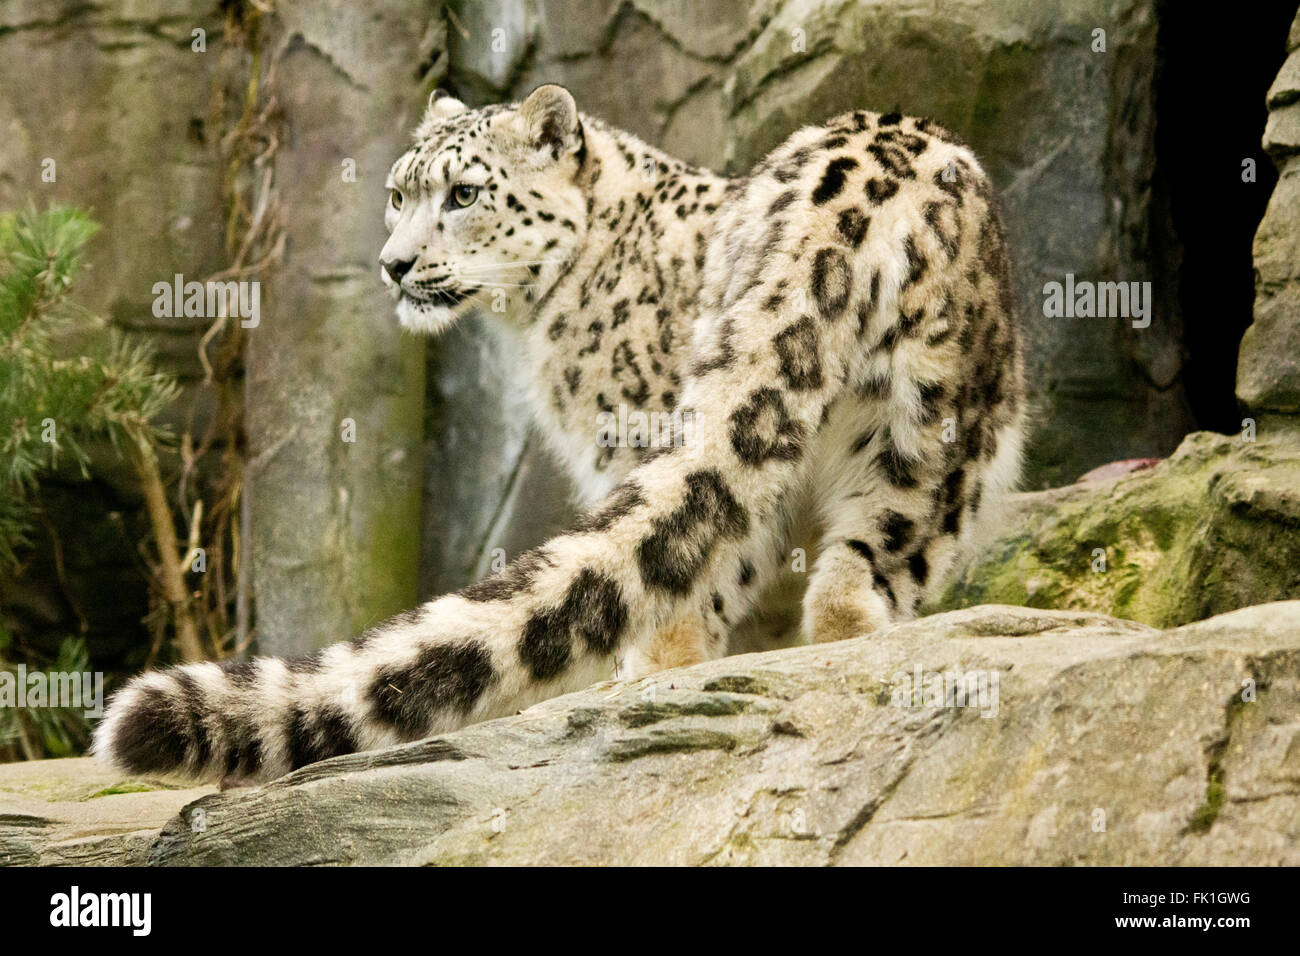 Snow Leopard longue queue détaillées montrant en premier plan. Le format paysage. Gros chat blanc avec des marques noires à l'enceinte des animaux en captivité au zoo de Marwell. Banque D'Images